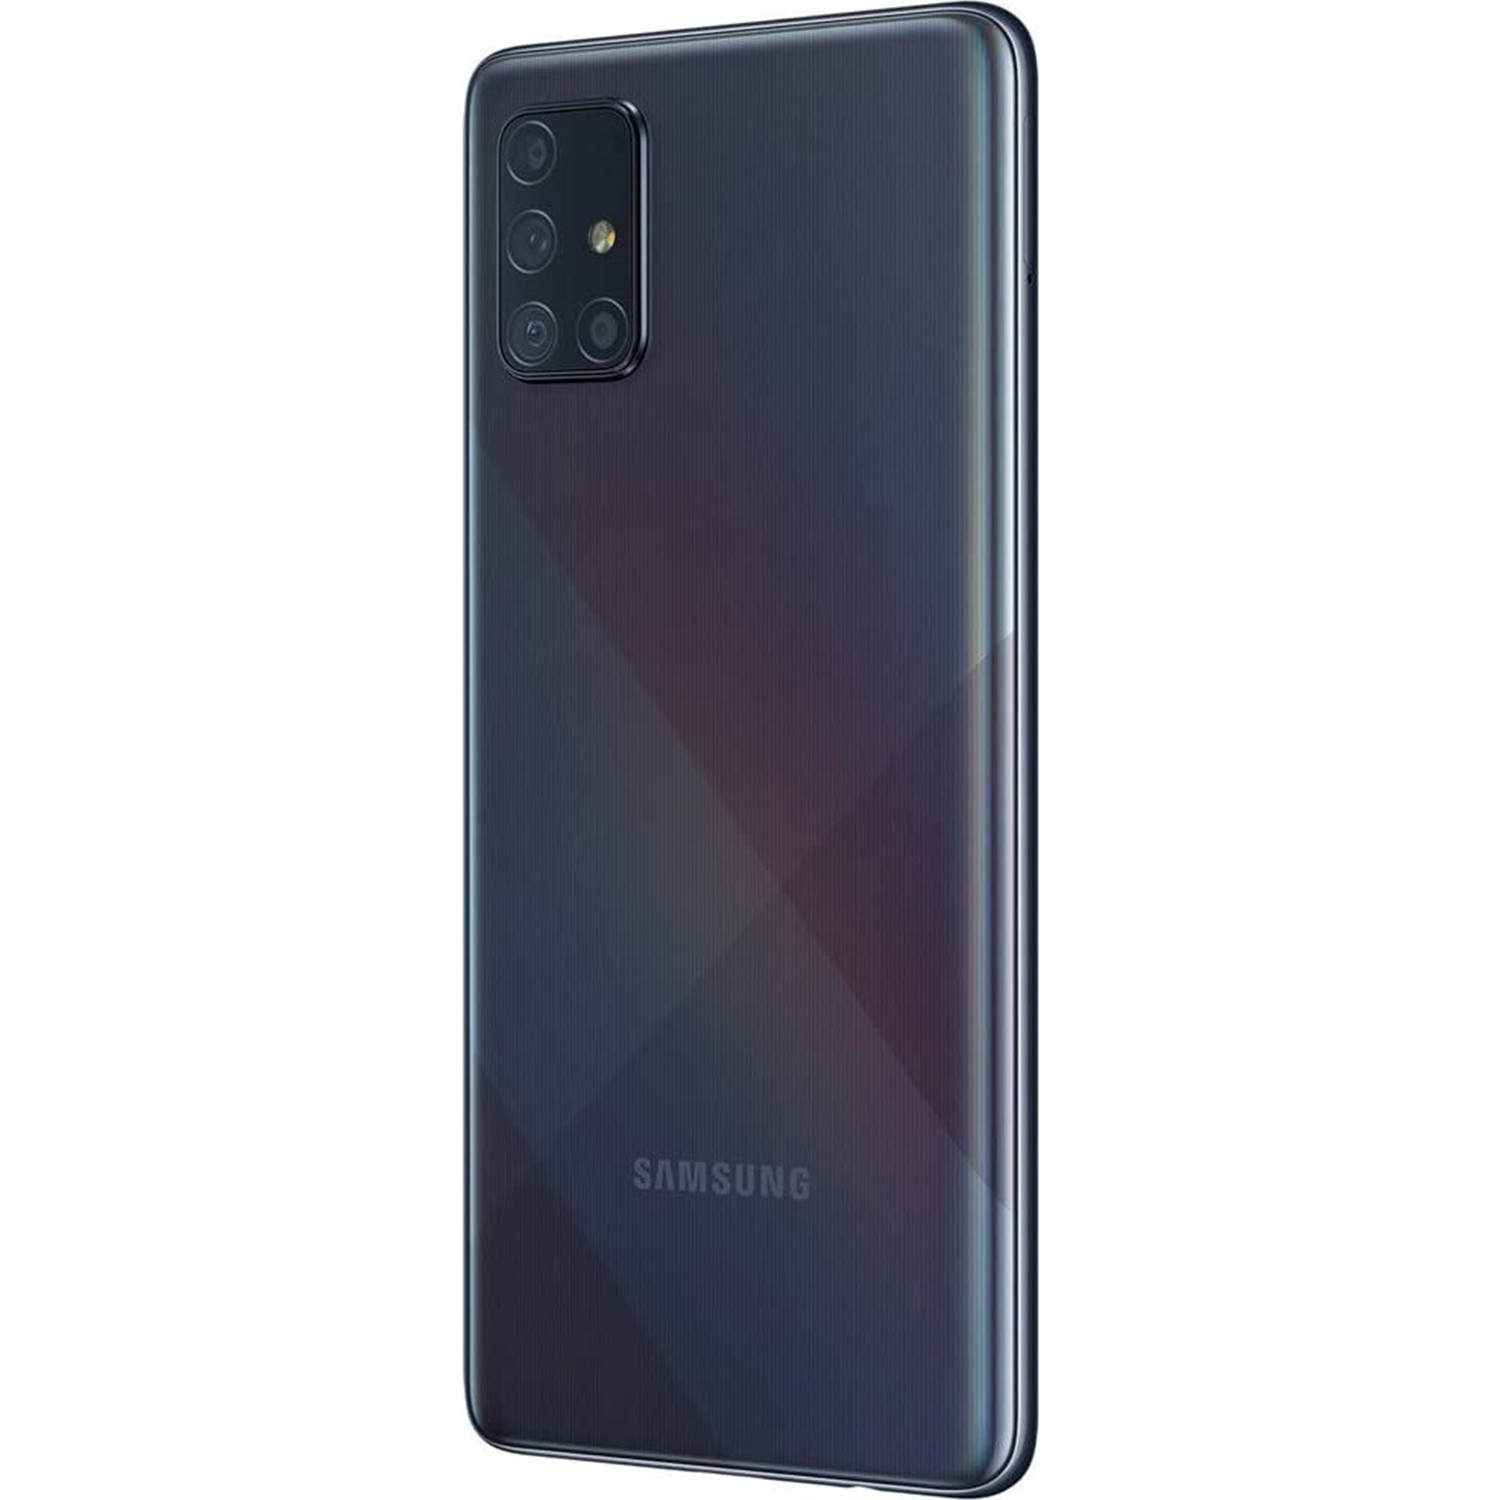 Samsung galaxy a71 128. Samsung Galaxy a71 128gb. Смартфон Samsung Galaxy a71 6/128gb. Samsung Galaxy a71 128gb Black. Samsung Galaxy a71 6 128gb черный.